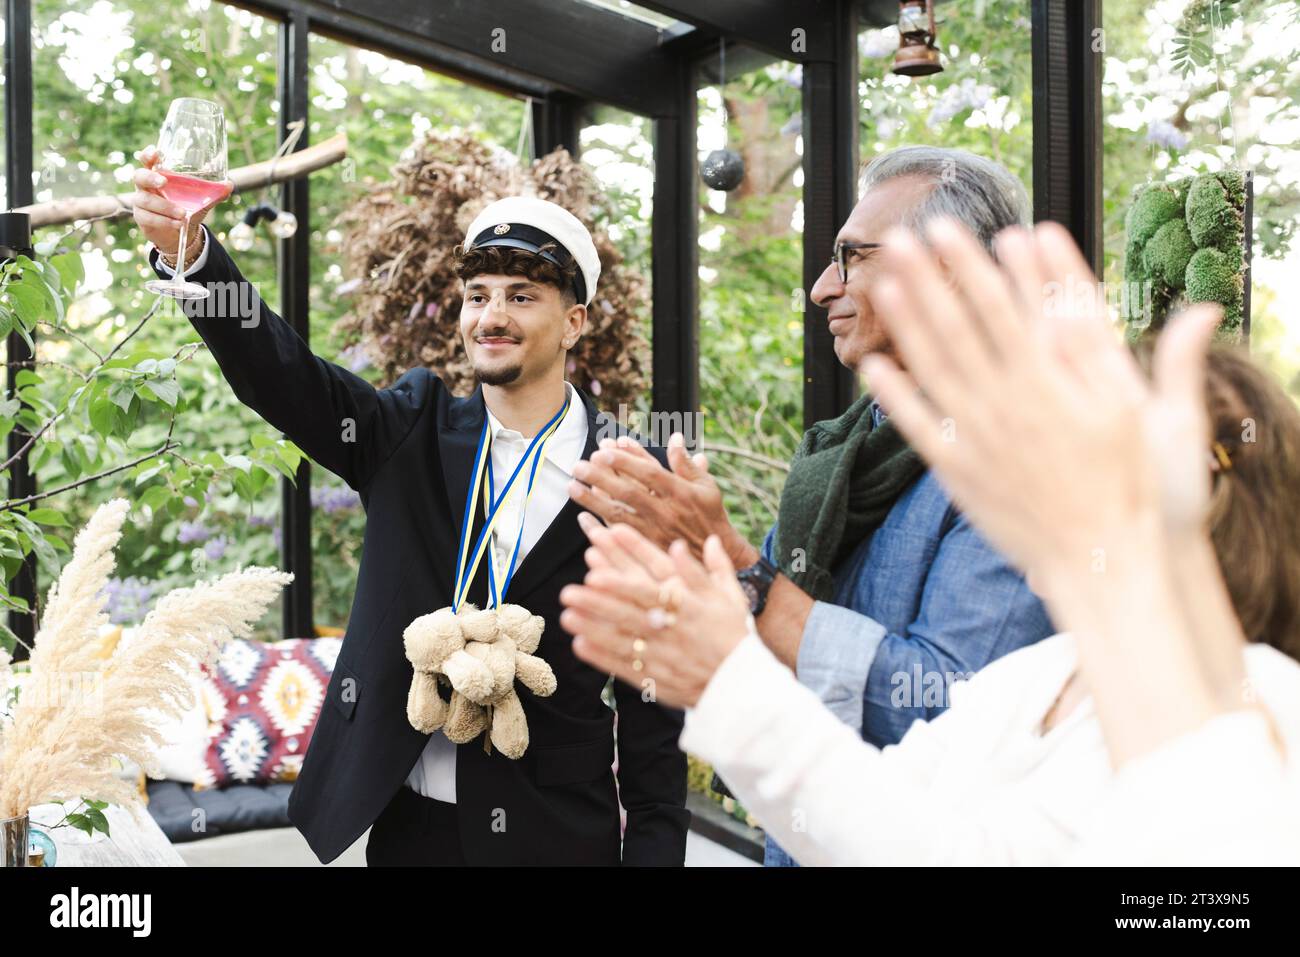 Jeune homme levant des toasts tout en se tenant debout avec la famille applaudissant pendant la fête Banque D'Images